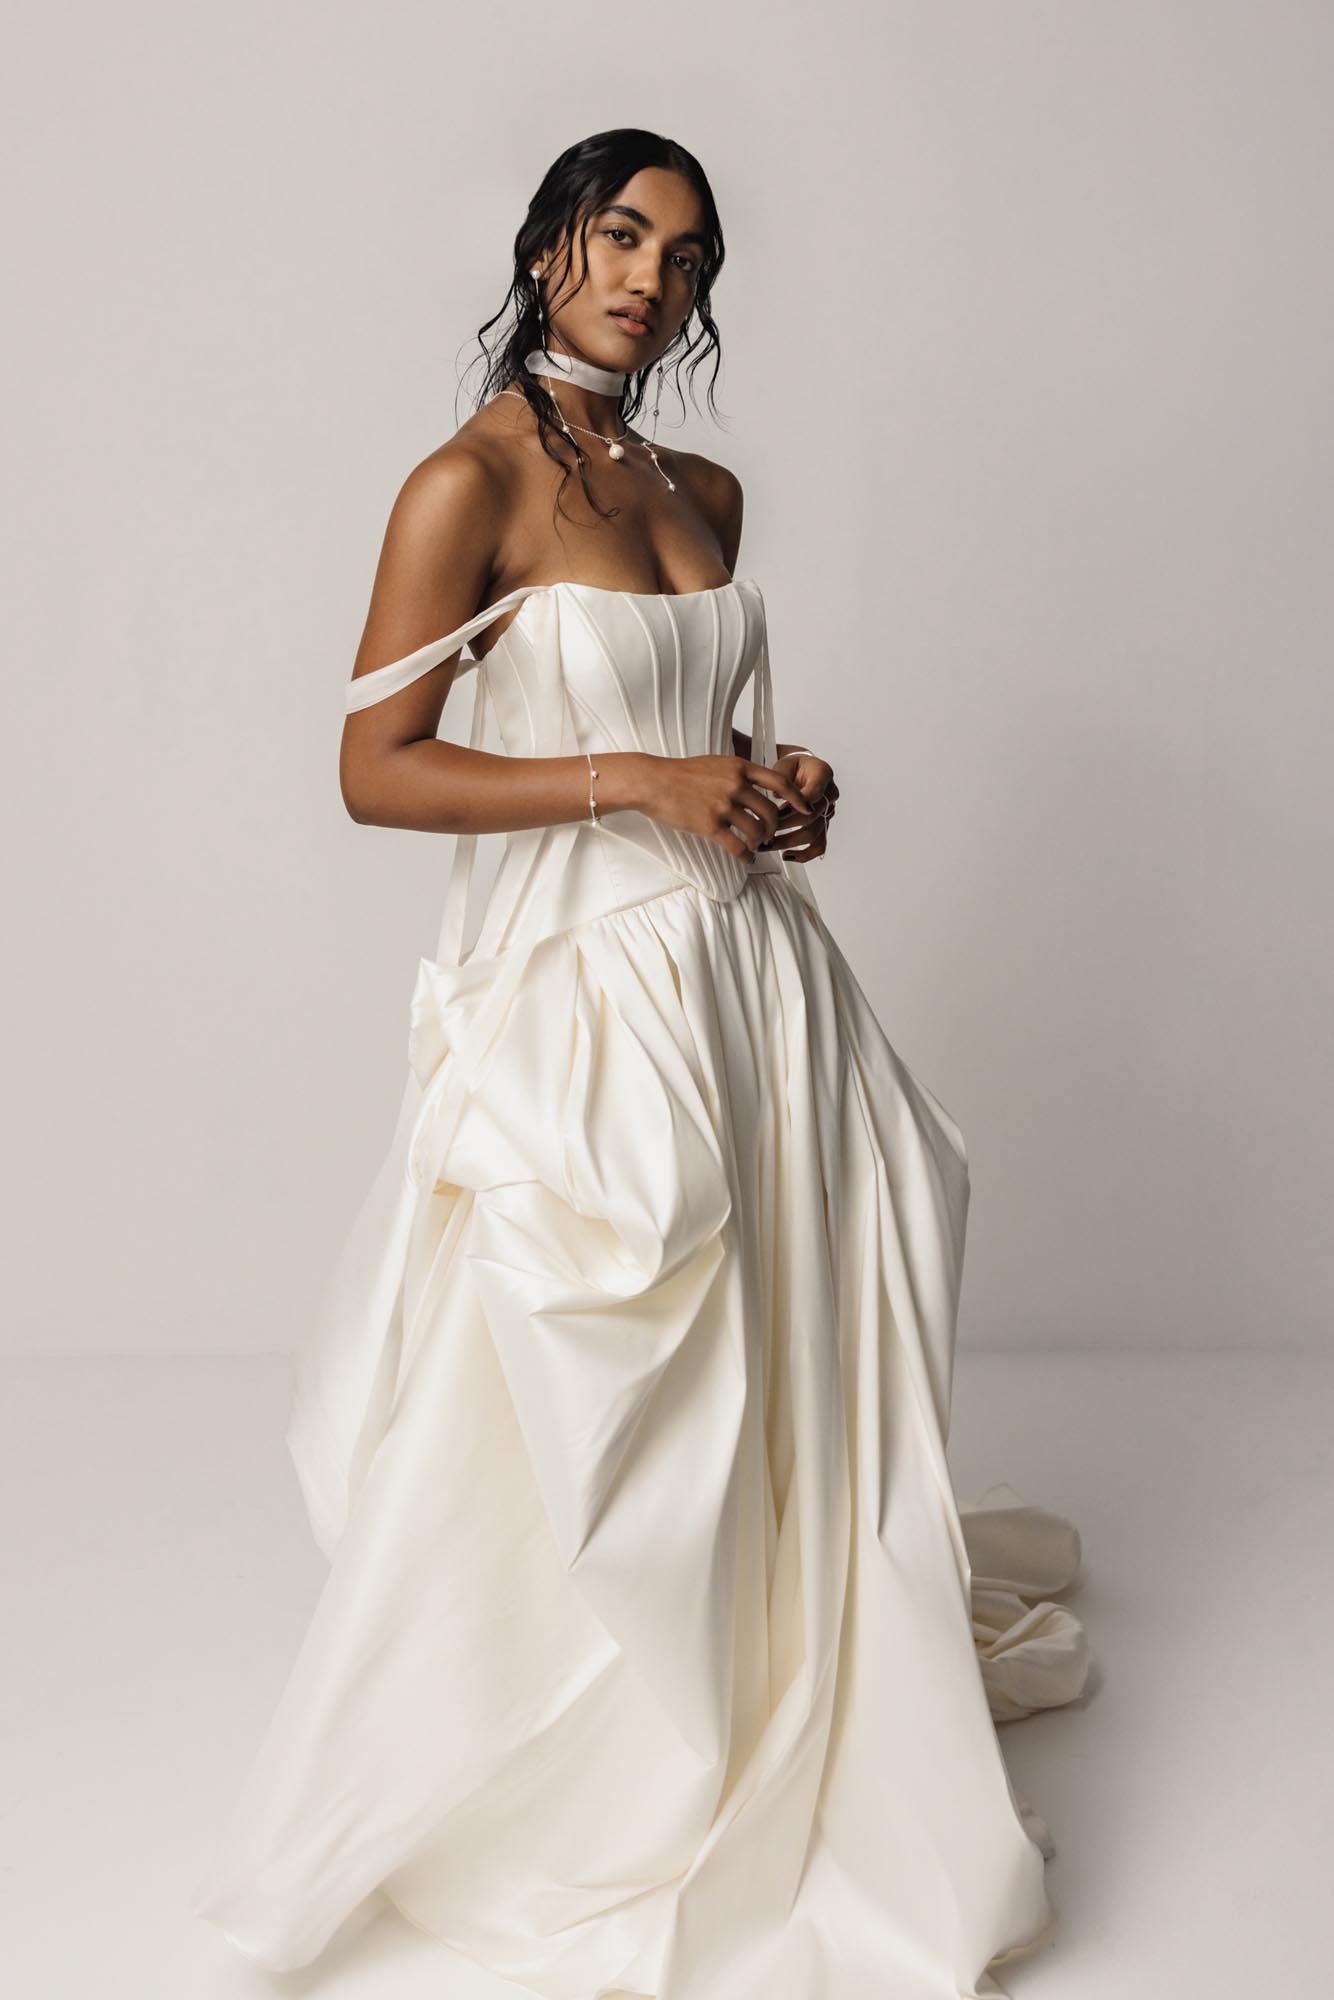 Saint Bridal + Wedding Dresses｜a&bé bridal shop